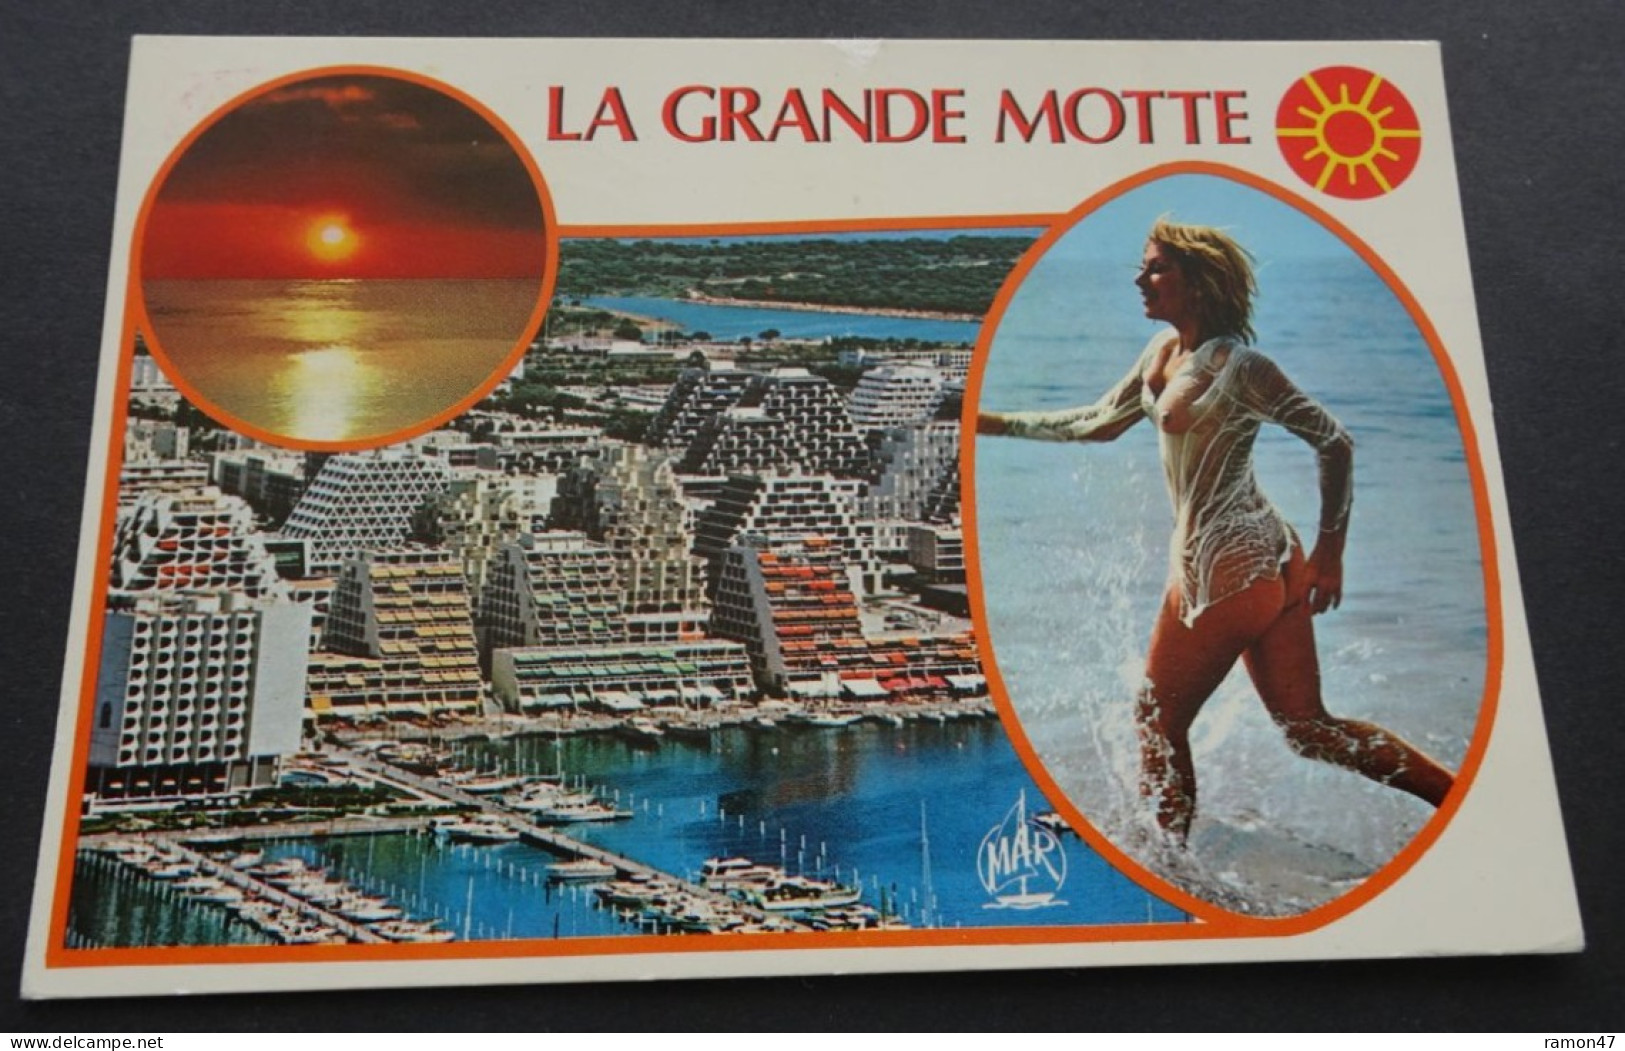 La Grande Motte - "La Ville De L'An 2000" - Les Editions "MAR", Nice - Montpellier